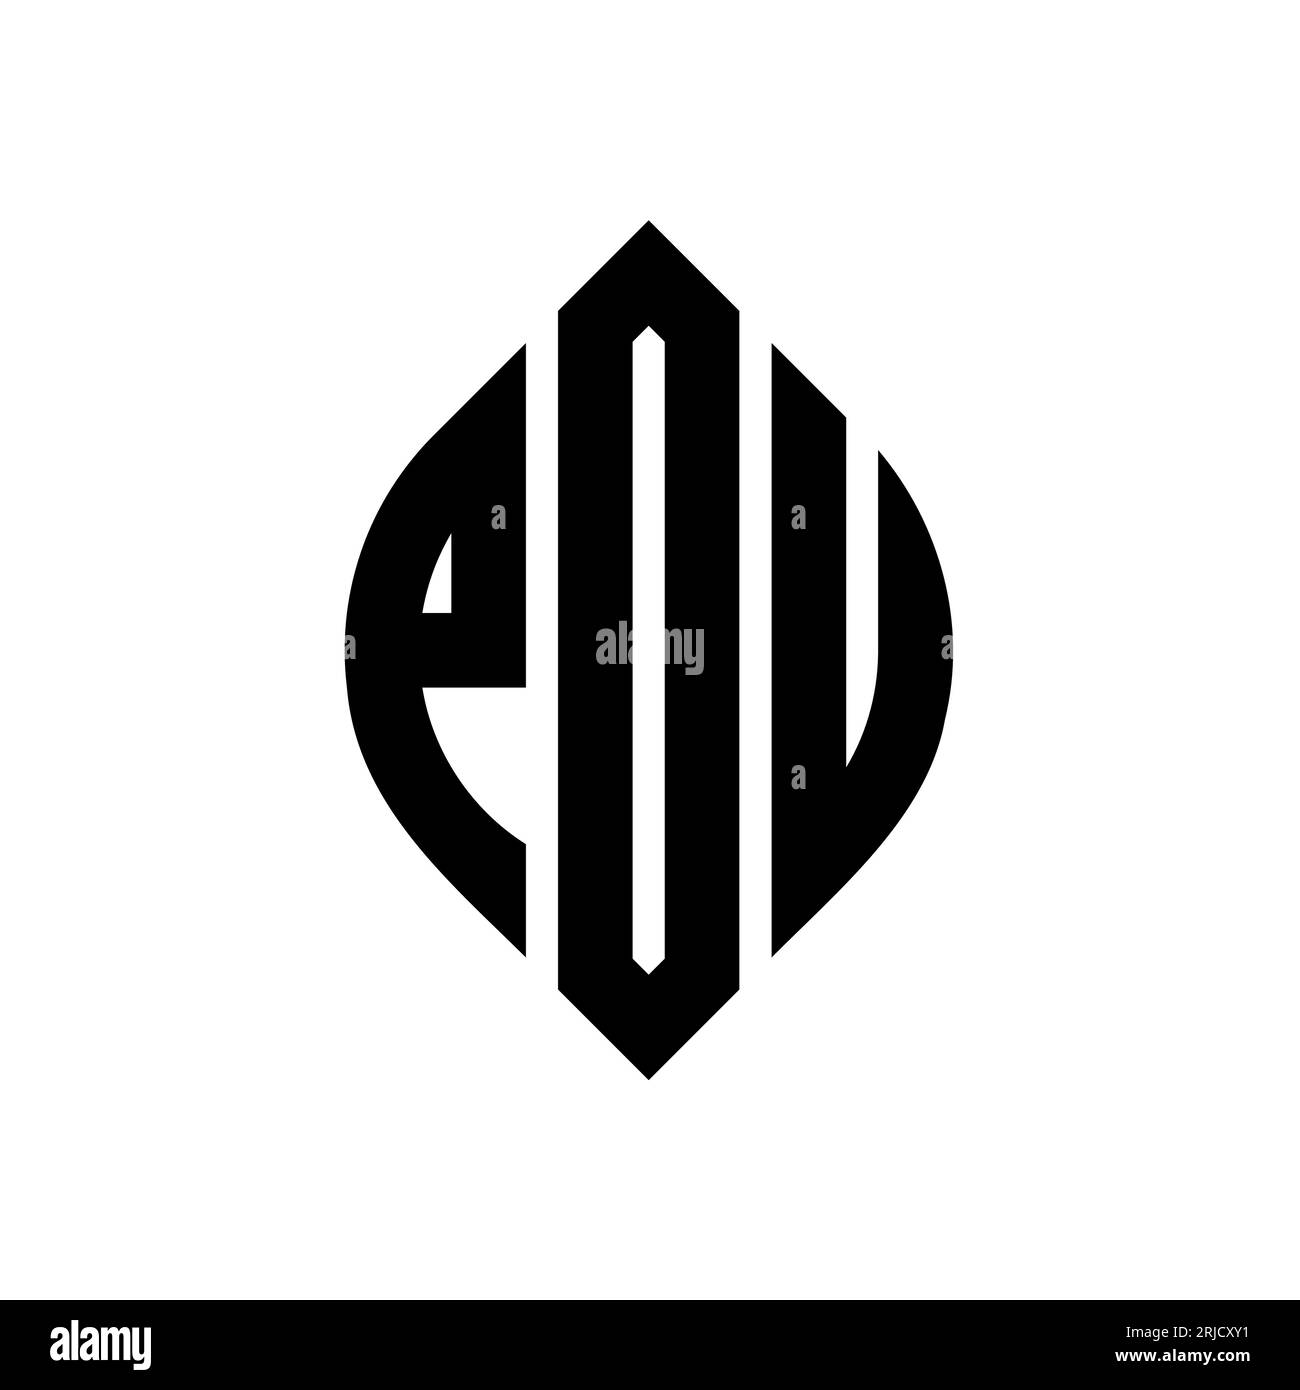 POU-Logodesign mit kreisförmigem Buchstaben und Ellipsenform. POU-Ellipsenbuchstaben im typografischen Stil. Die drei Initialen bilden ein kreisförmiges Logo. PoE-CI Stock Vektor